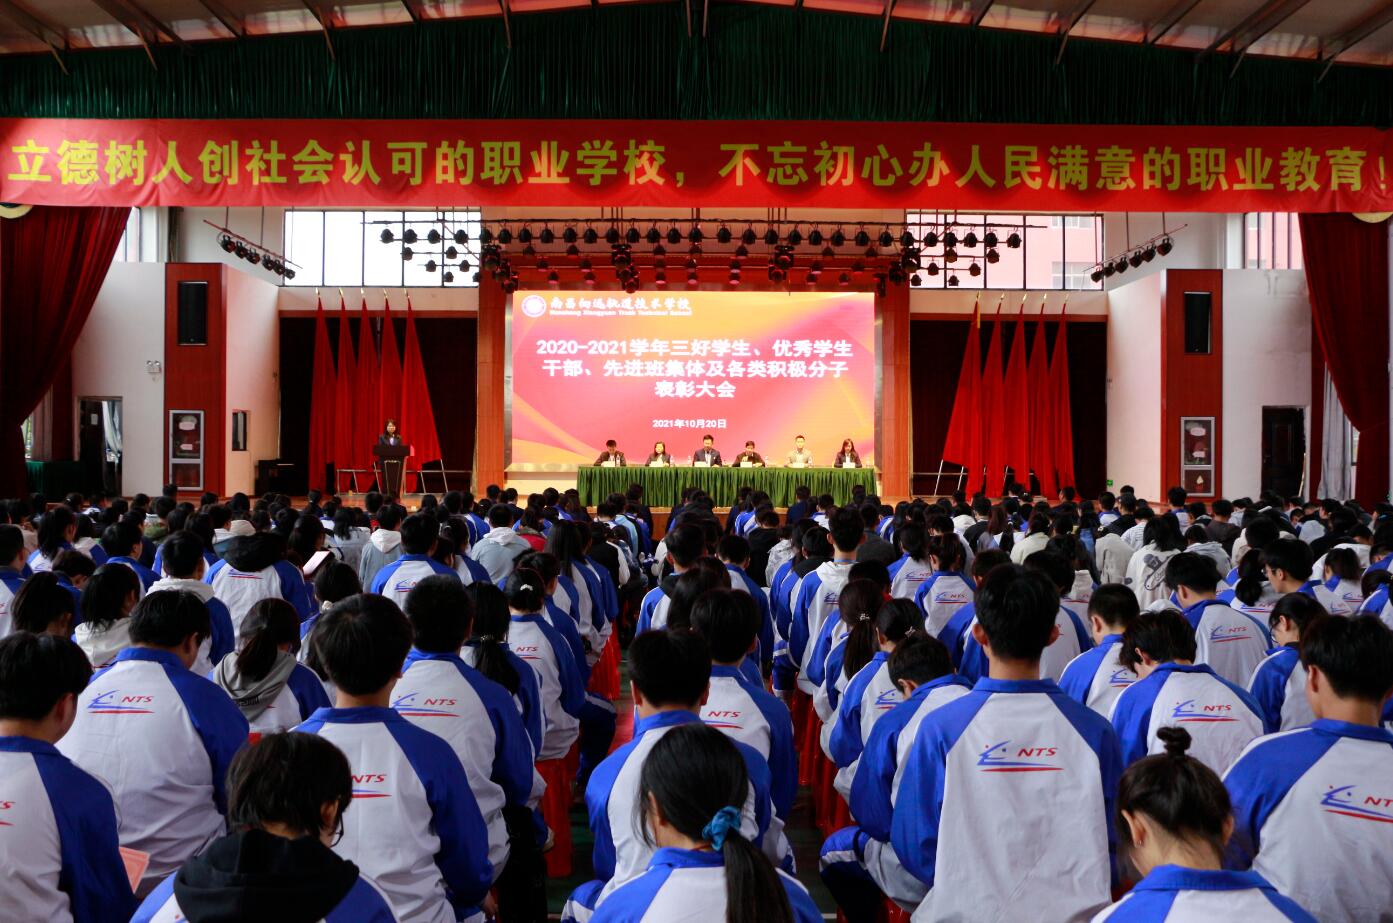 南昌向远轨道技术学校举行2020-2021学年度“评优评先”表彰大会